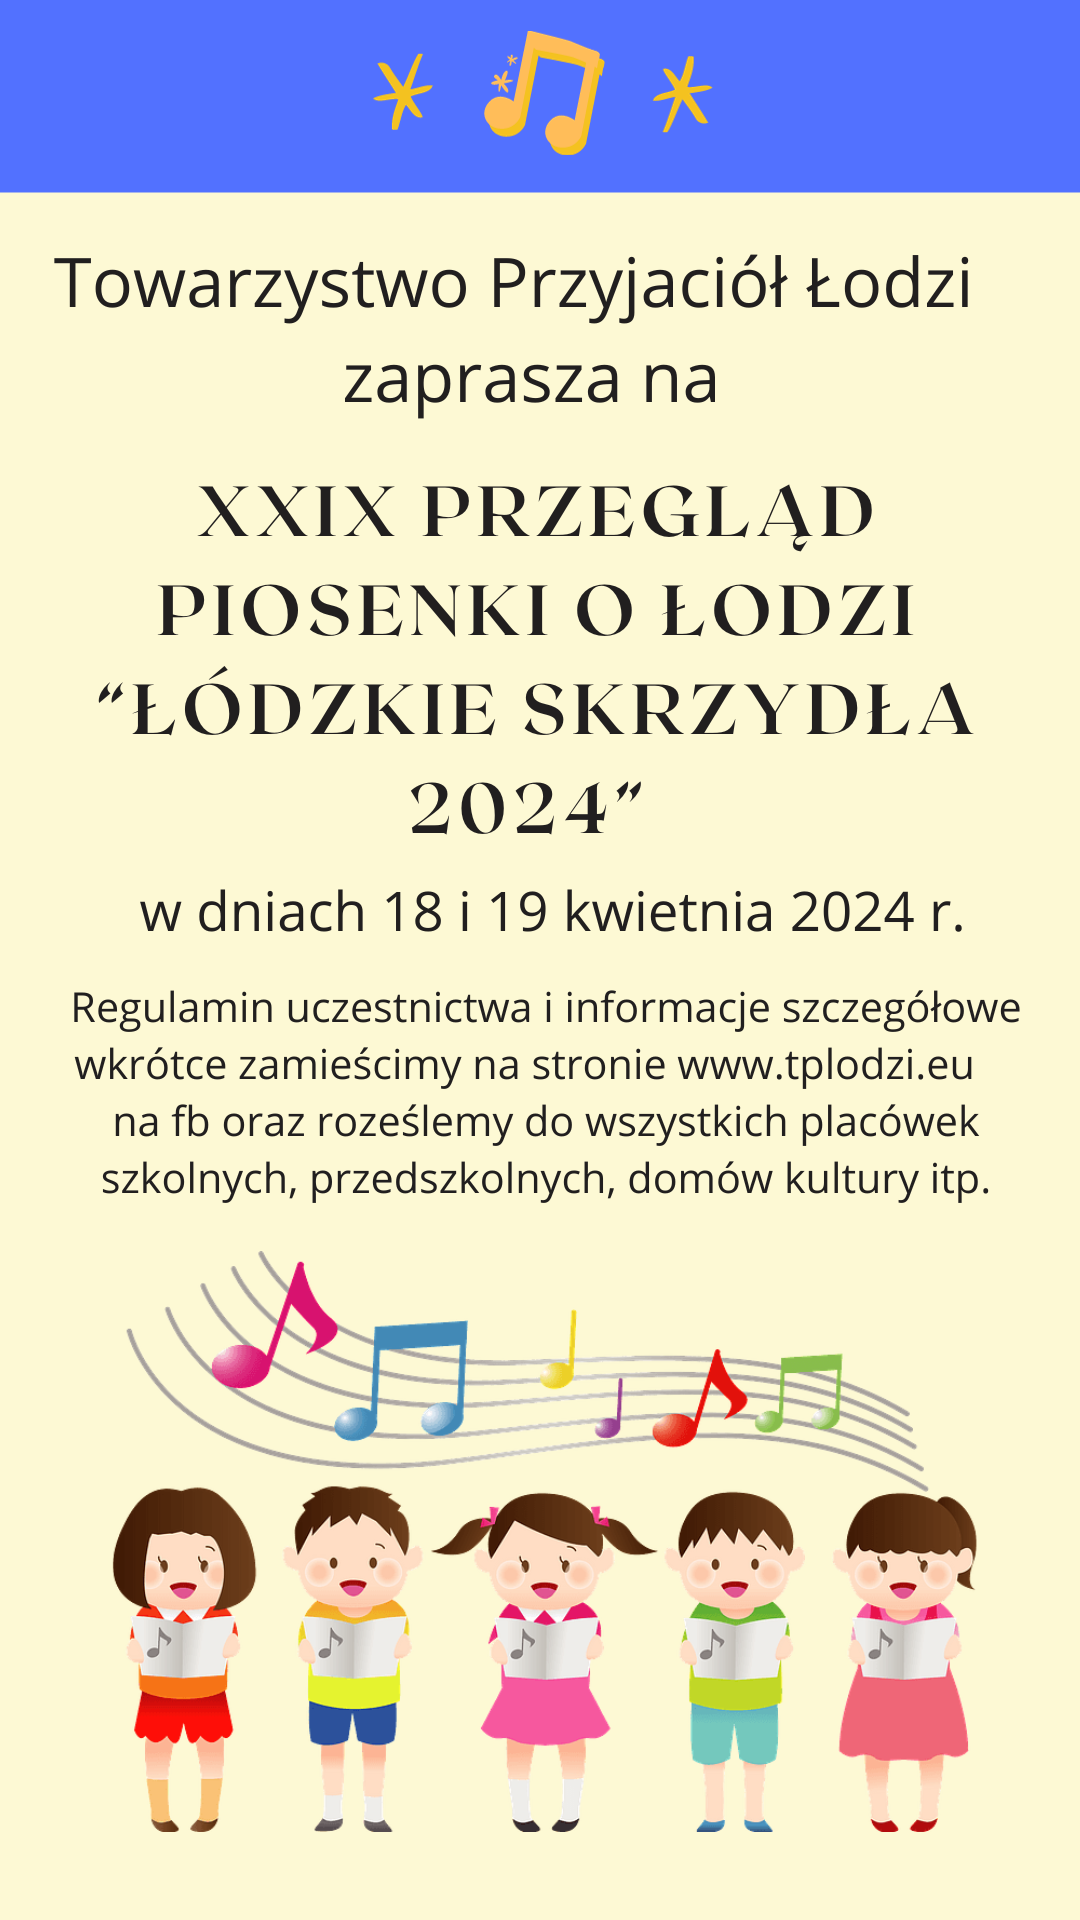 XXIX Przegląd Piosenki o Łodzi 2023